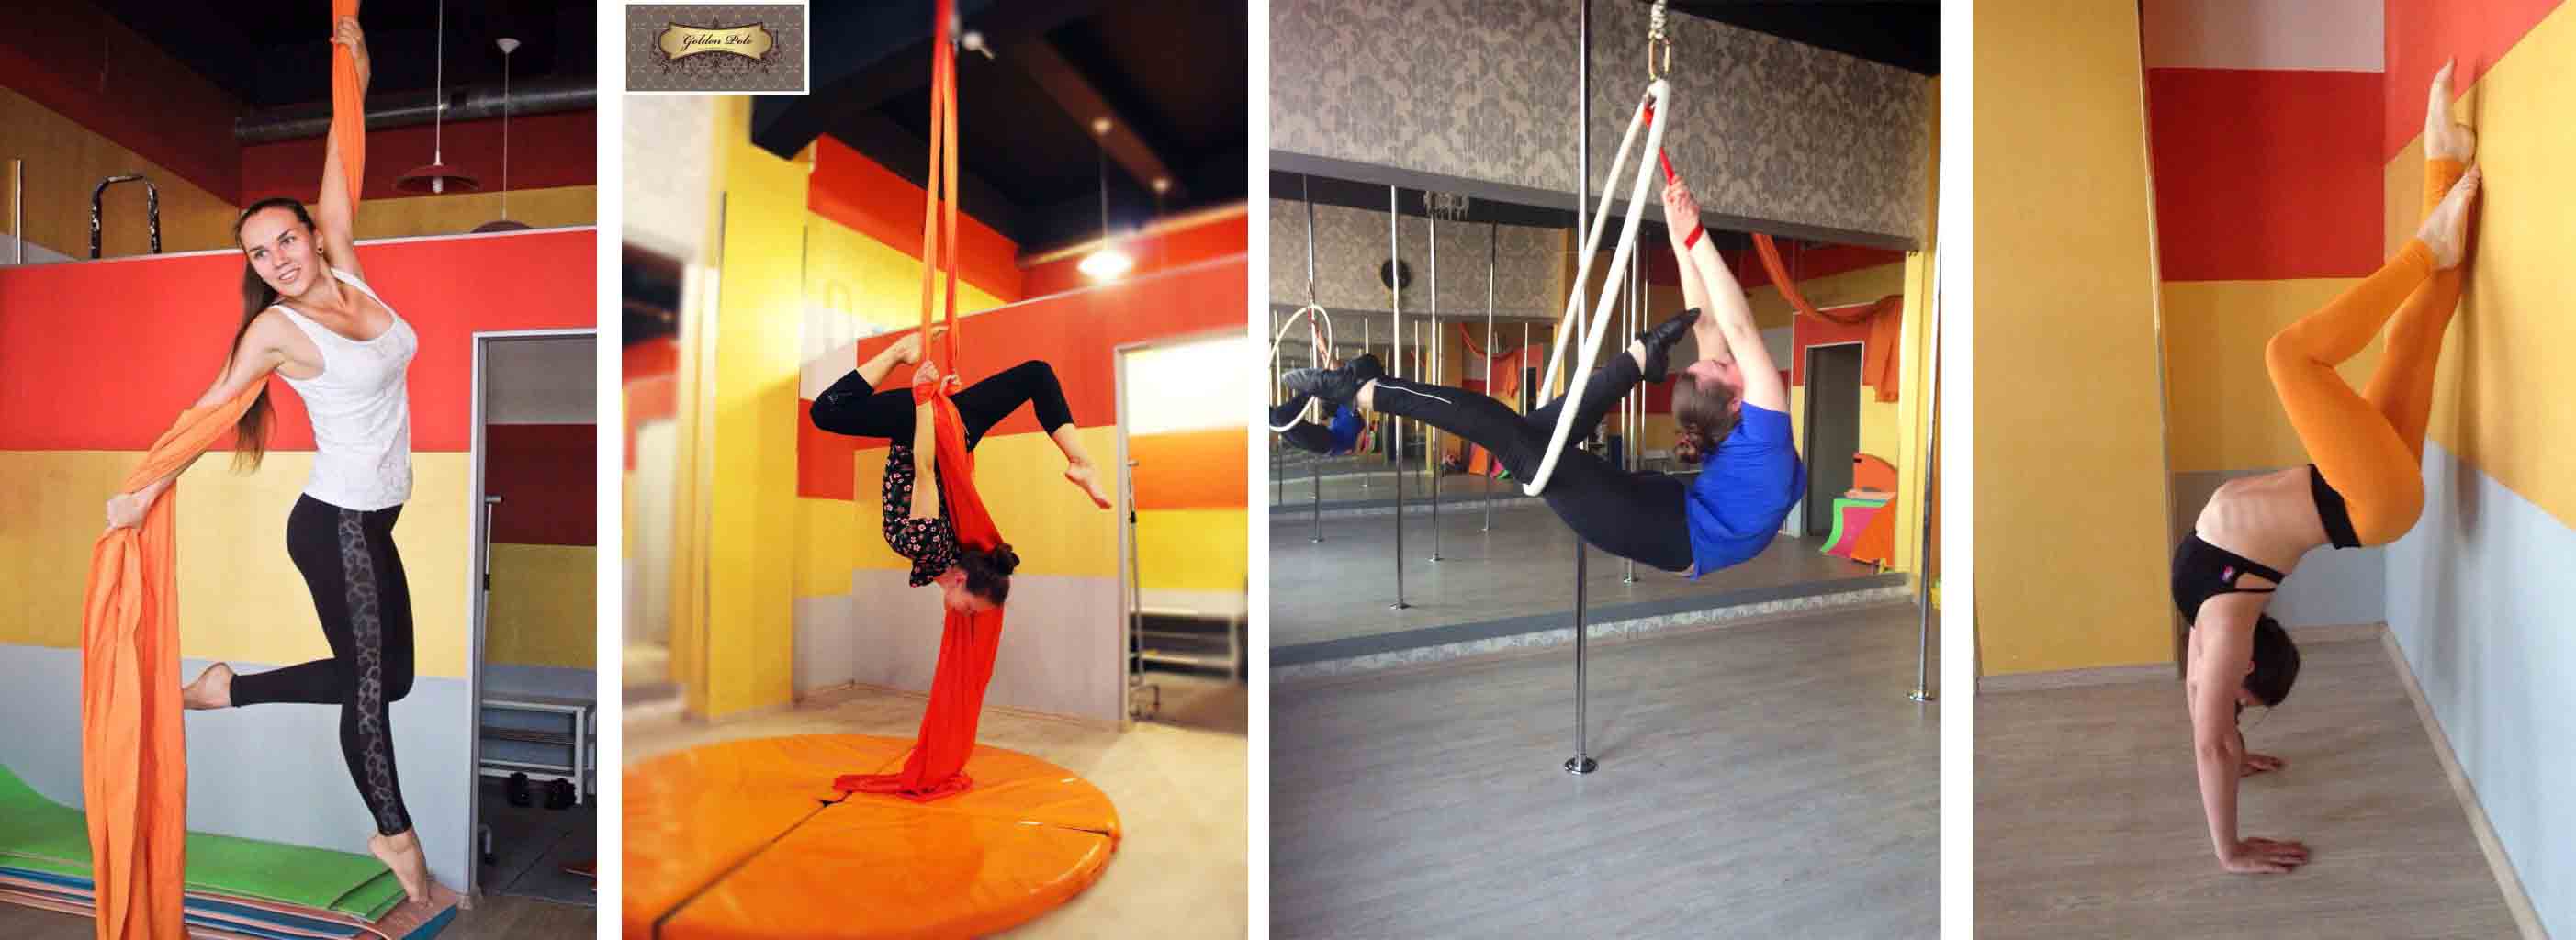 Обучение воздушной акробатике в студии танцев  «Golden Pole» со скидкой 50%.